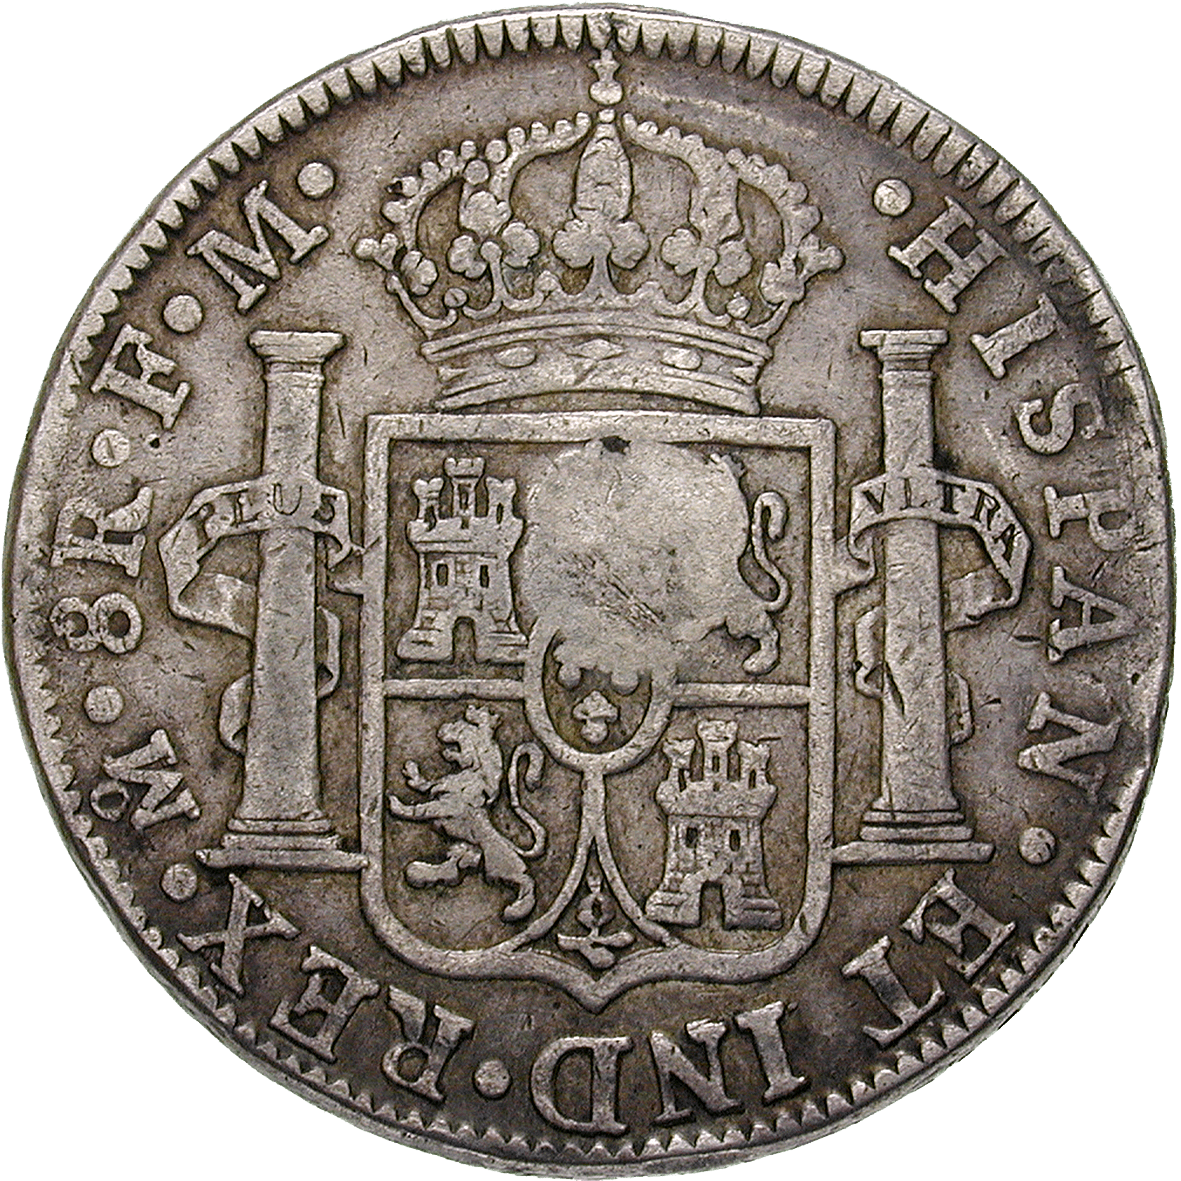 Vereinigtes Königreich Grossbritannien, Karl IV. von Spanien, Real de a ocho (Peso) 1795 mit britischem Gegenstempel (reverse)